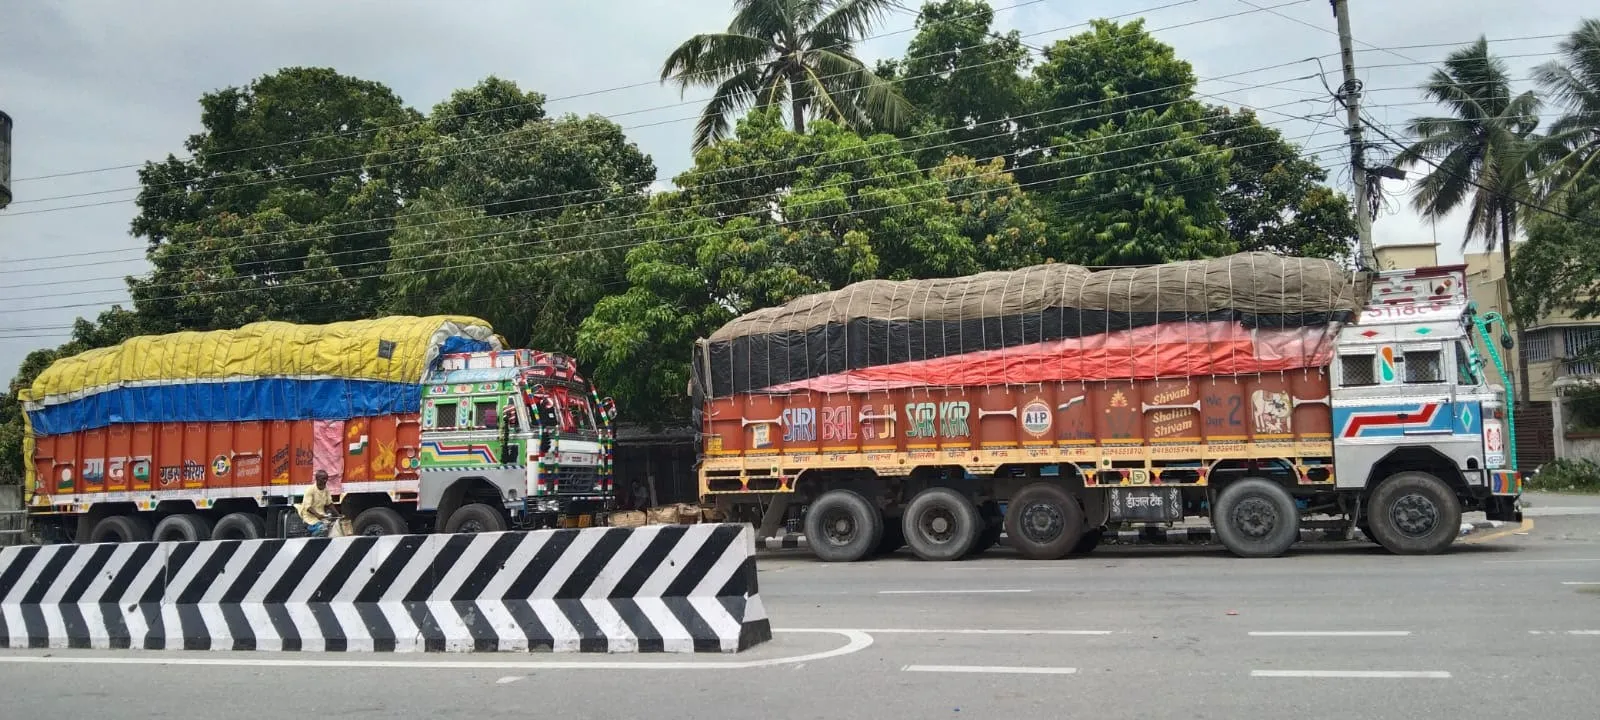 सुपारी बोकेका आठ भारतीय ट्रक प्रहरीको नियन्त्रणमा